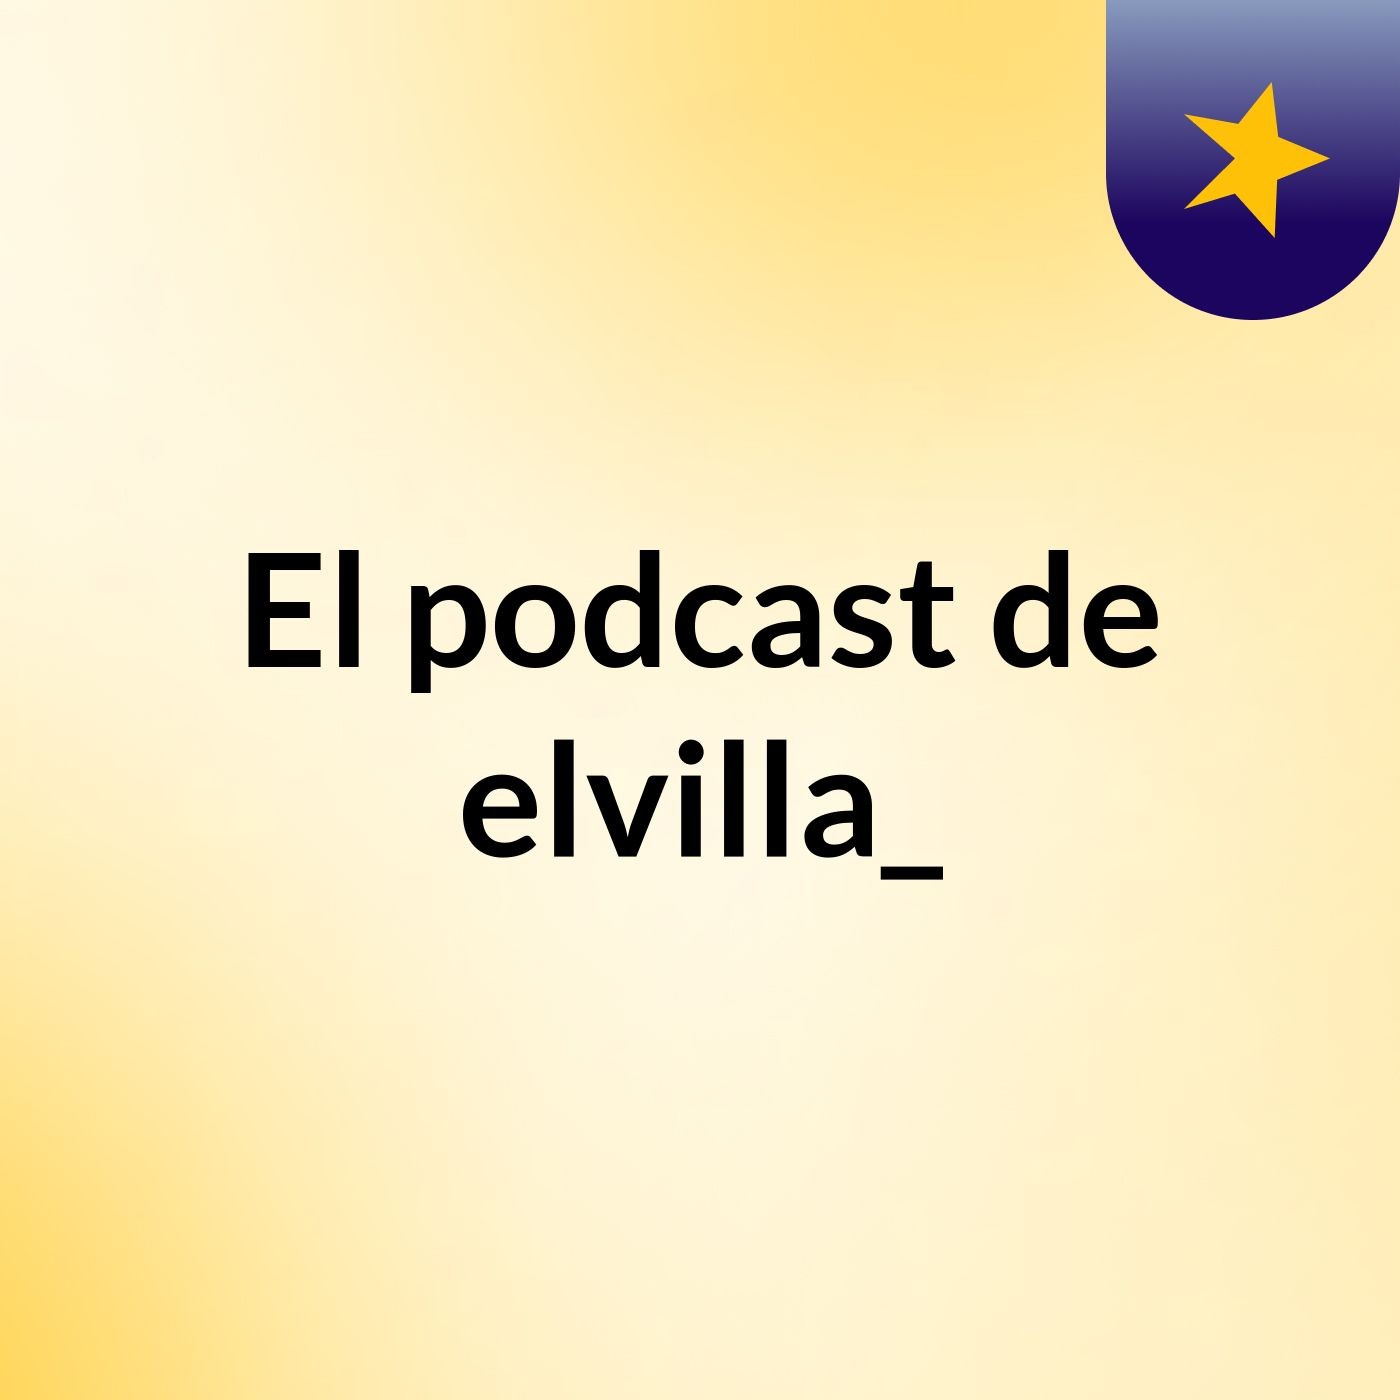 El podcast de elvilla_